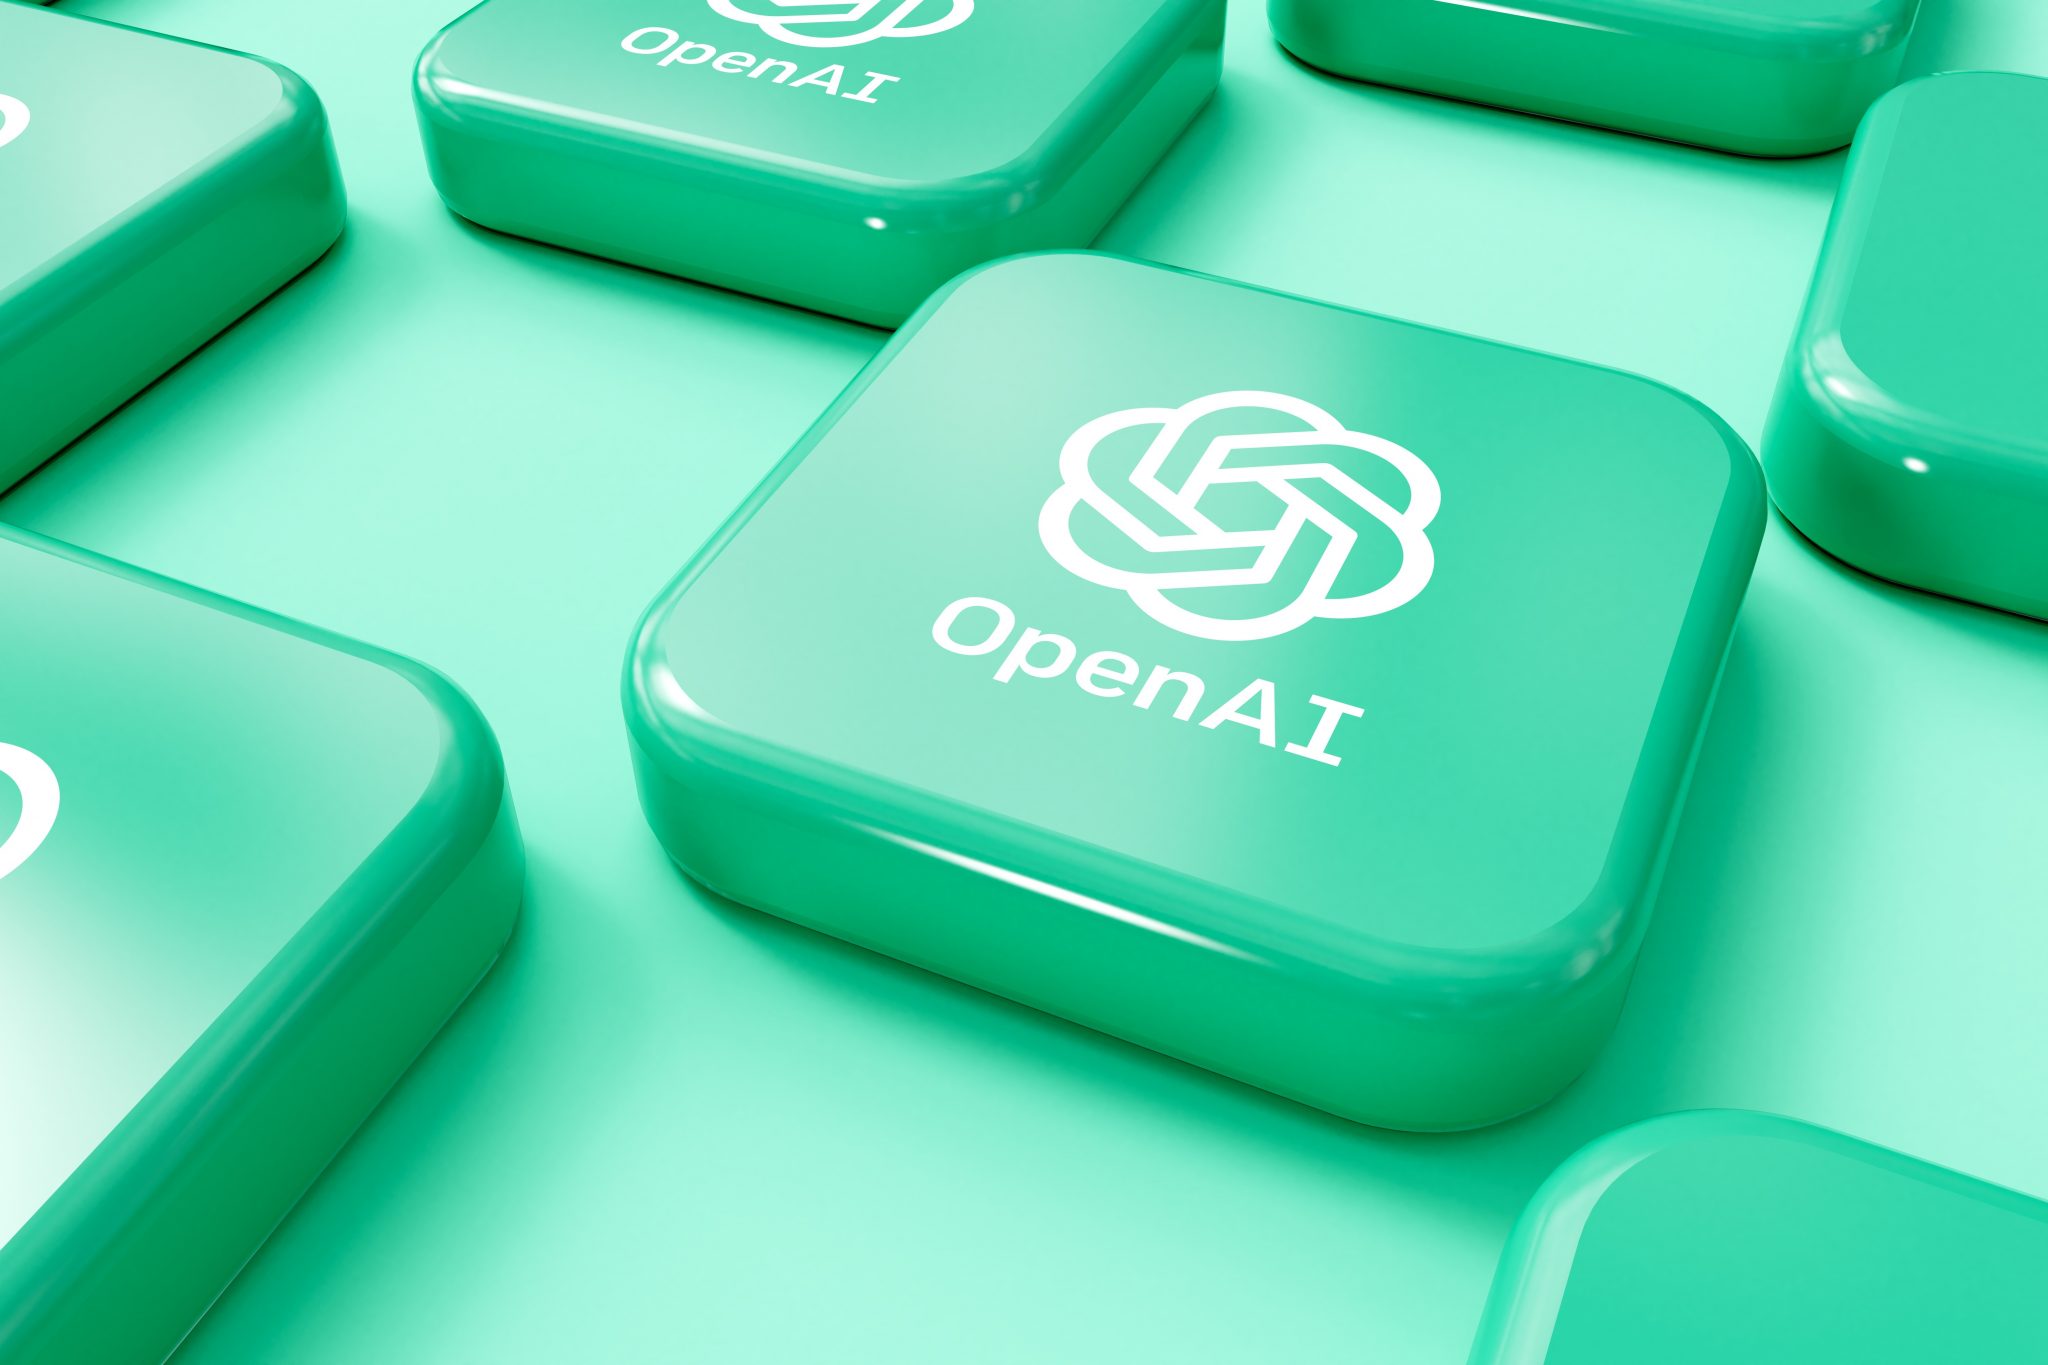 Quels sentiments animent la communauté OpenAI ?